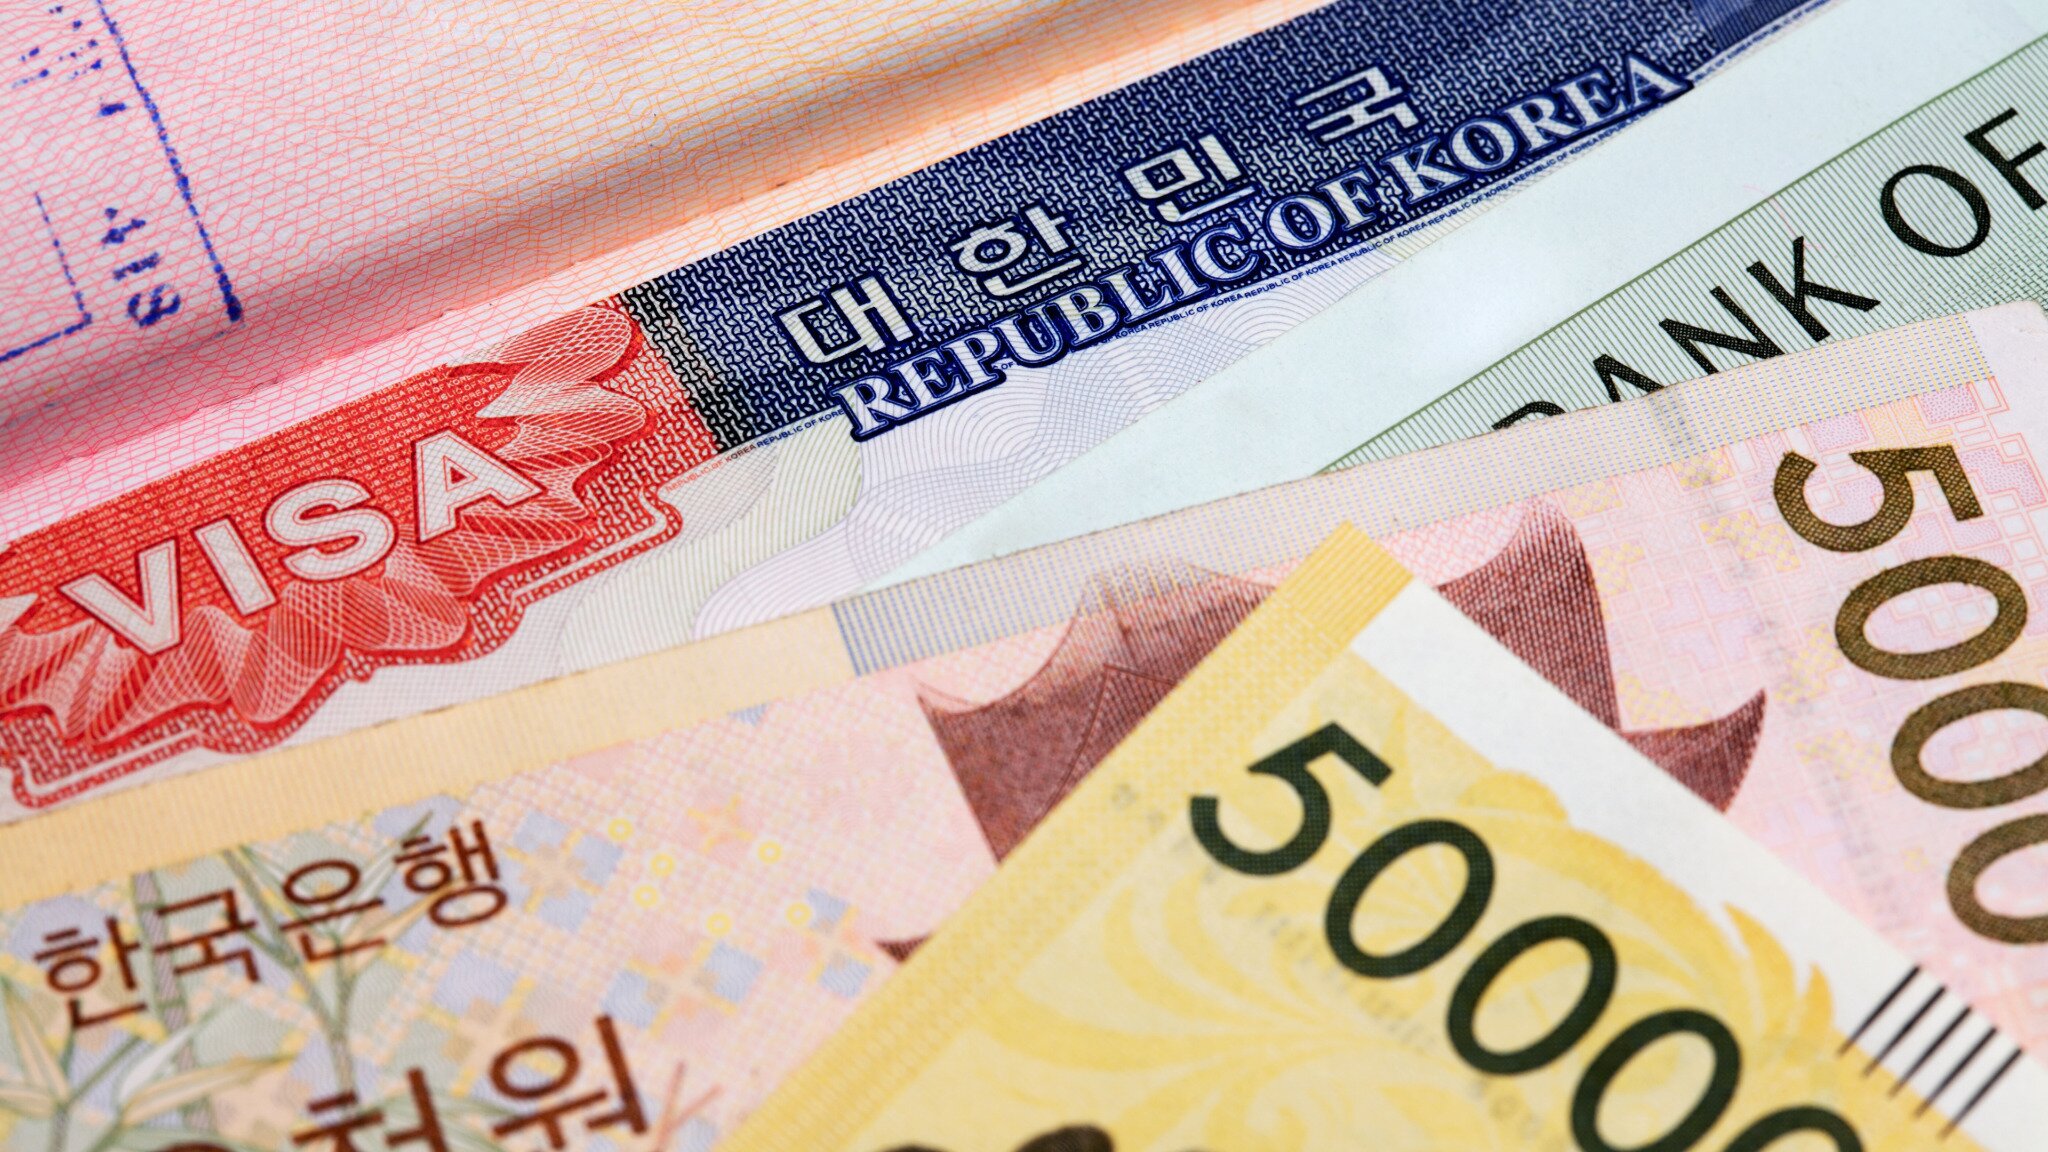 Kể cả khi visa Schengen hết hạn vẫn có thể sử dụng để miễn chứng minh tài chính visa Hàn Quốc